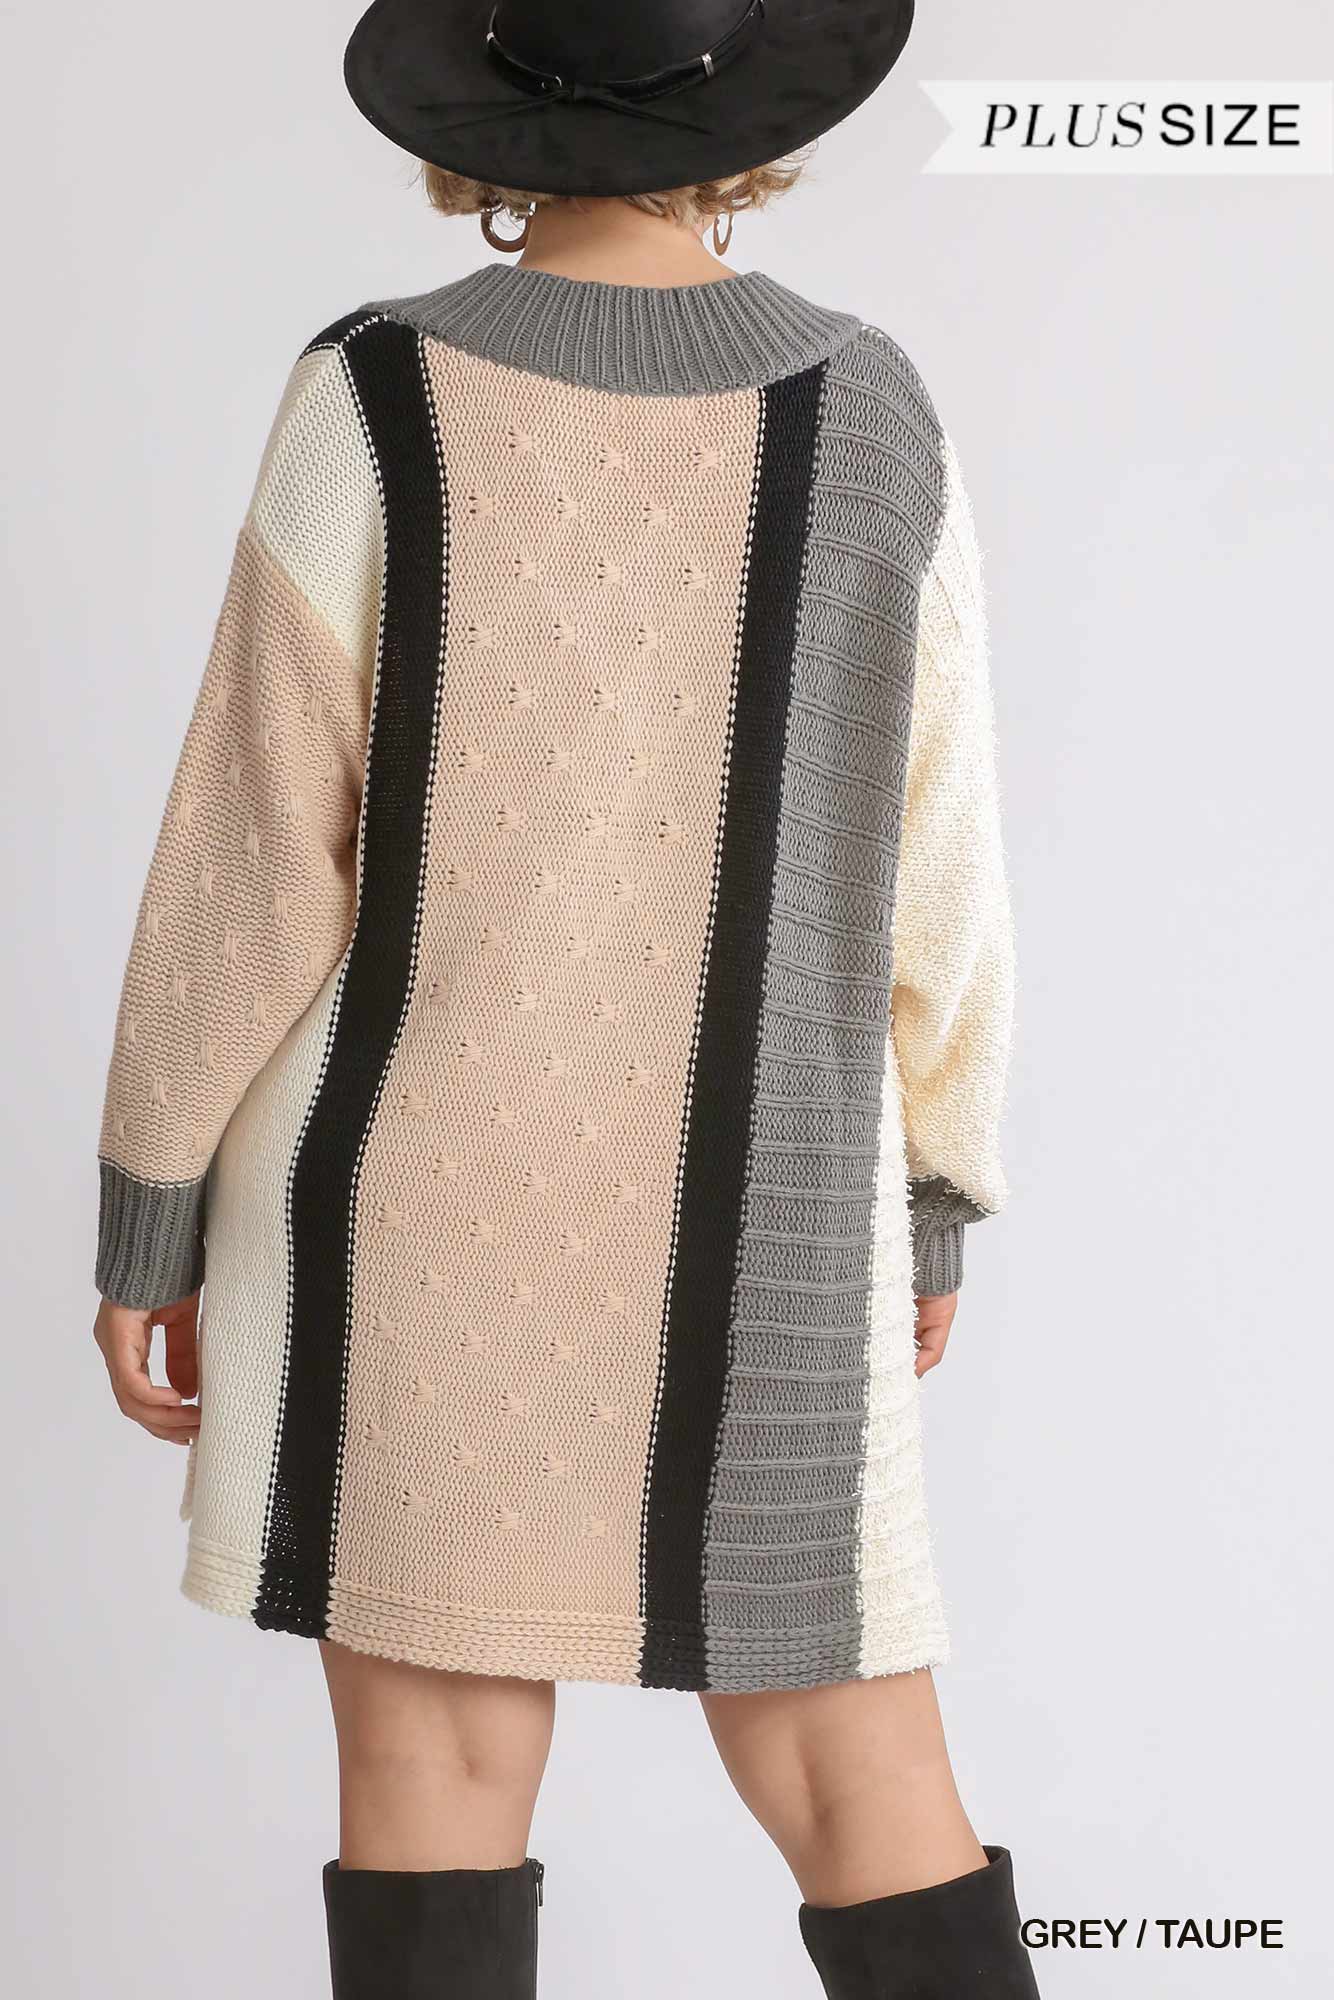 Multicolor Boucla V-neck Oversized Women's Sweater Dress